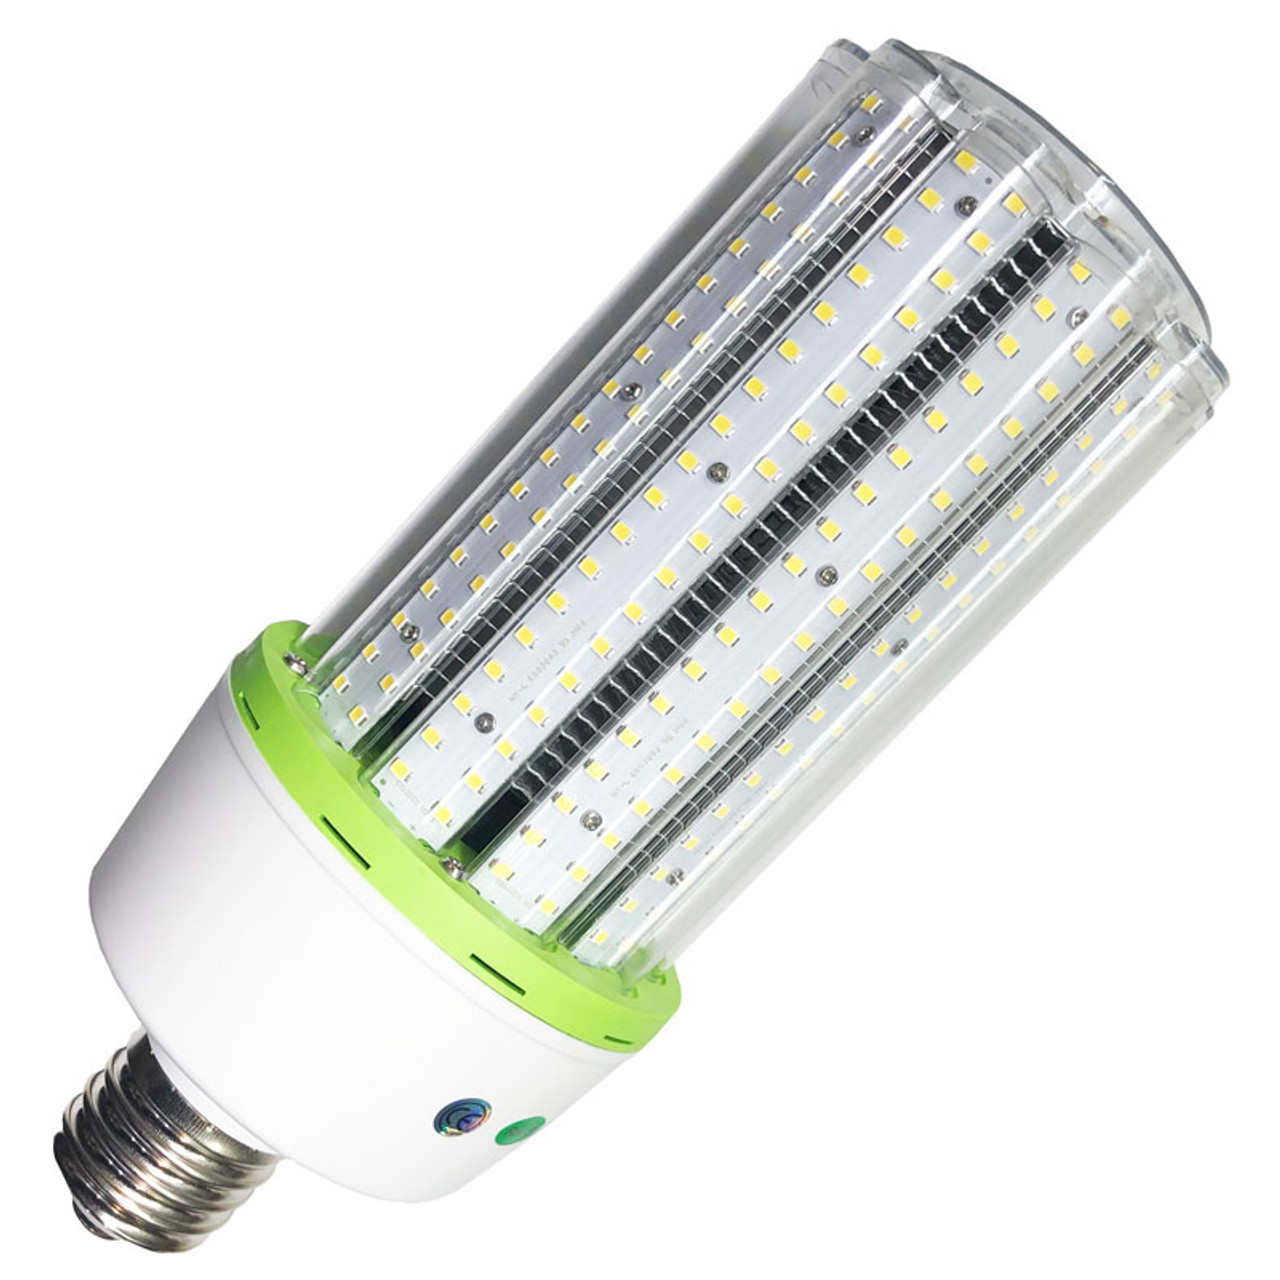 60 Watt LED Corn Bulb Replaces 180 Watt HID, 7800 Lumen, IP 64, DLC Certified, ETL 5 Year Warranty - LED Global Supply